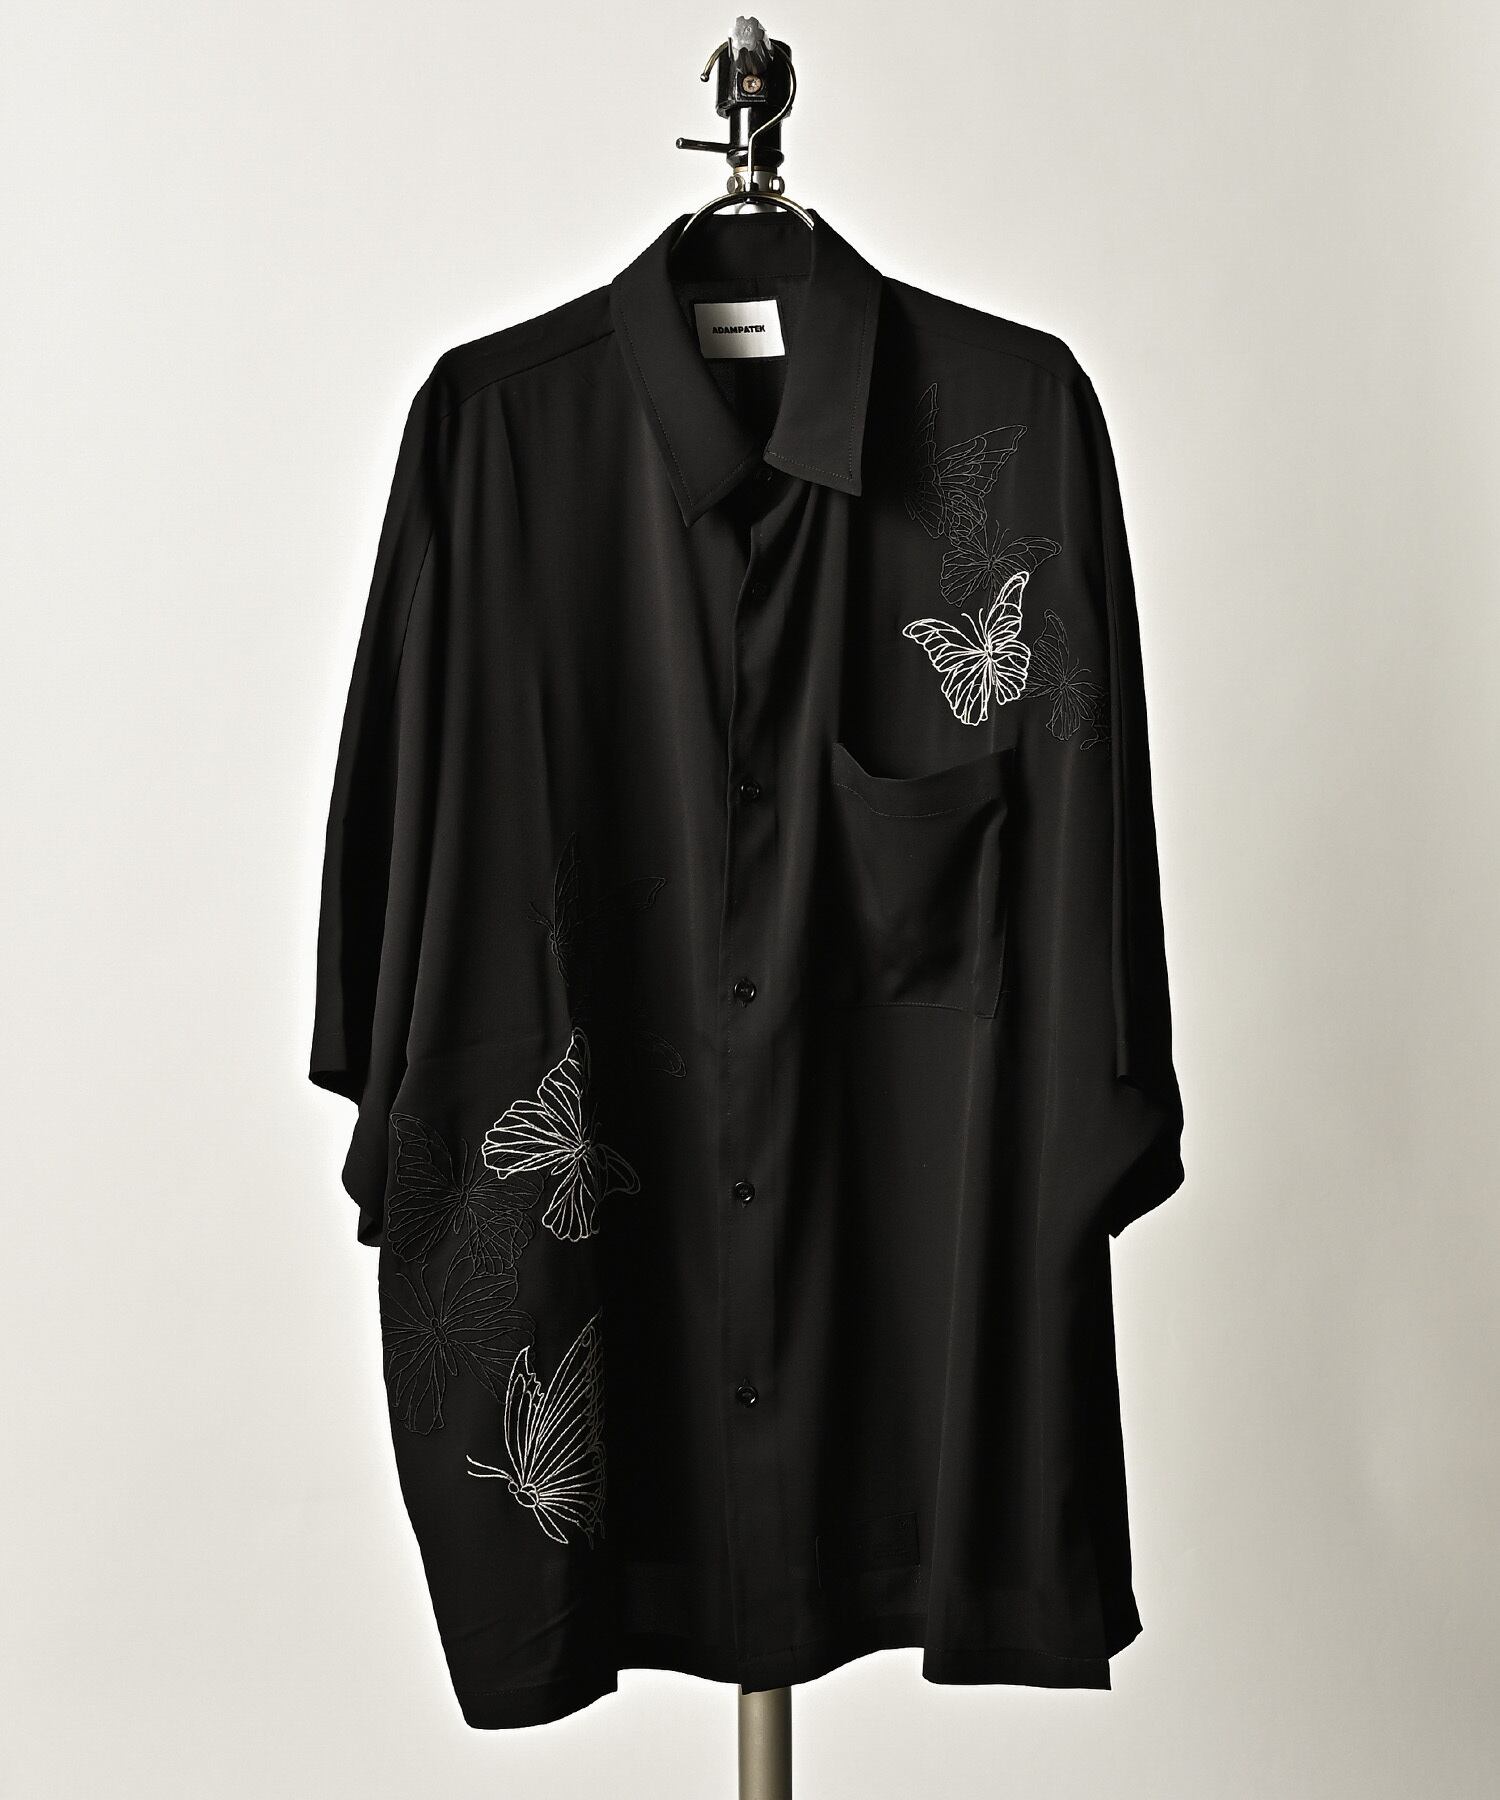 ADAM PATEK butterfly embroidery short sleeve shirt (BLK) AP2315033